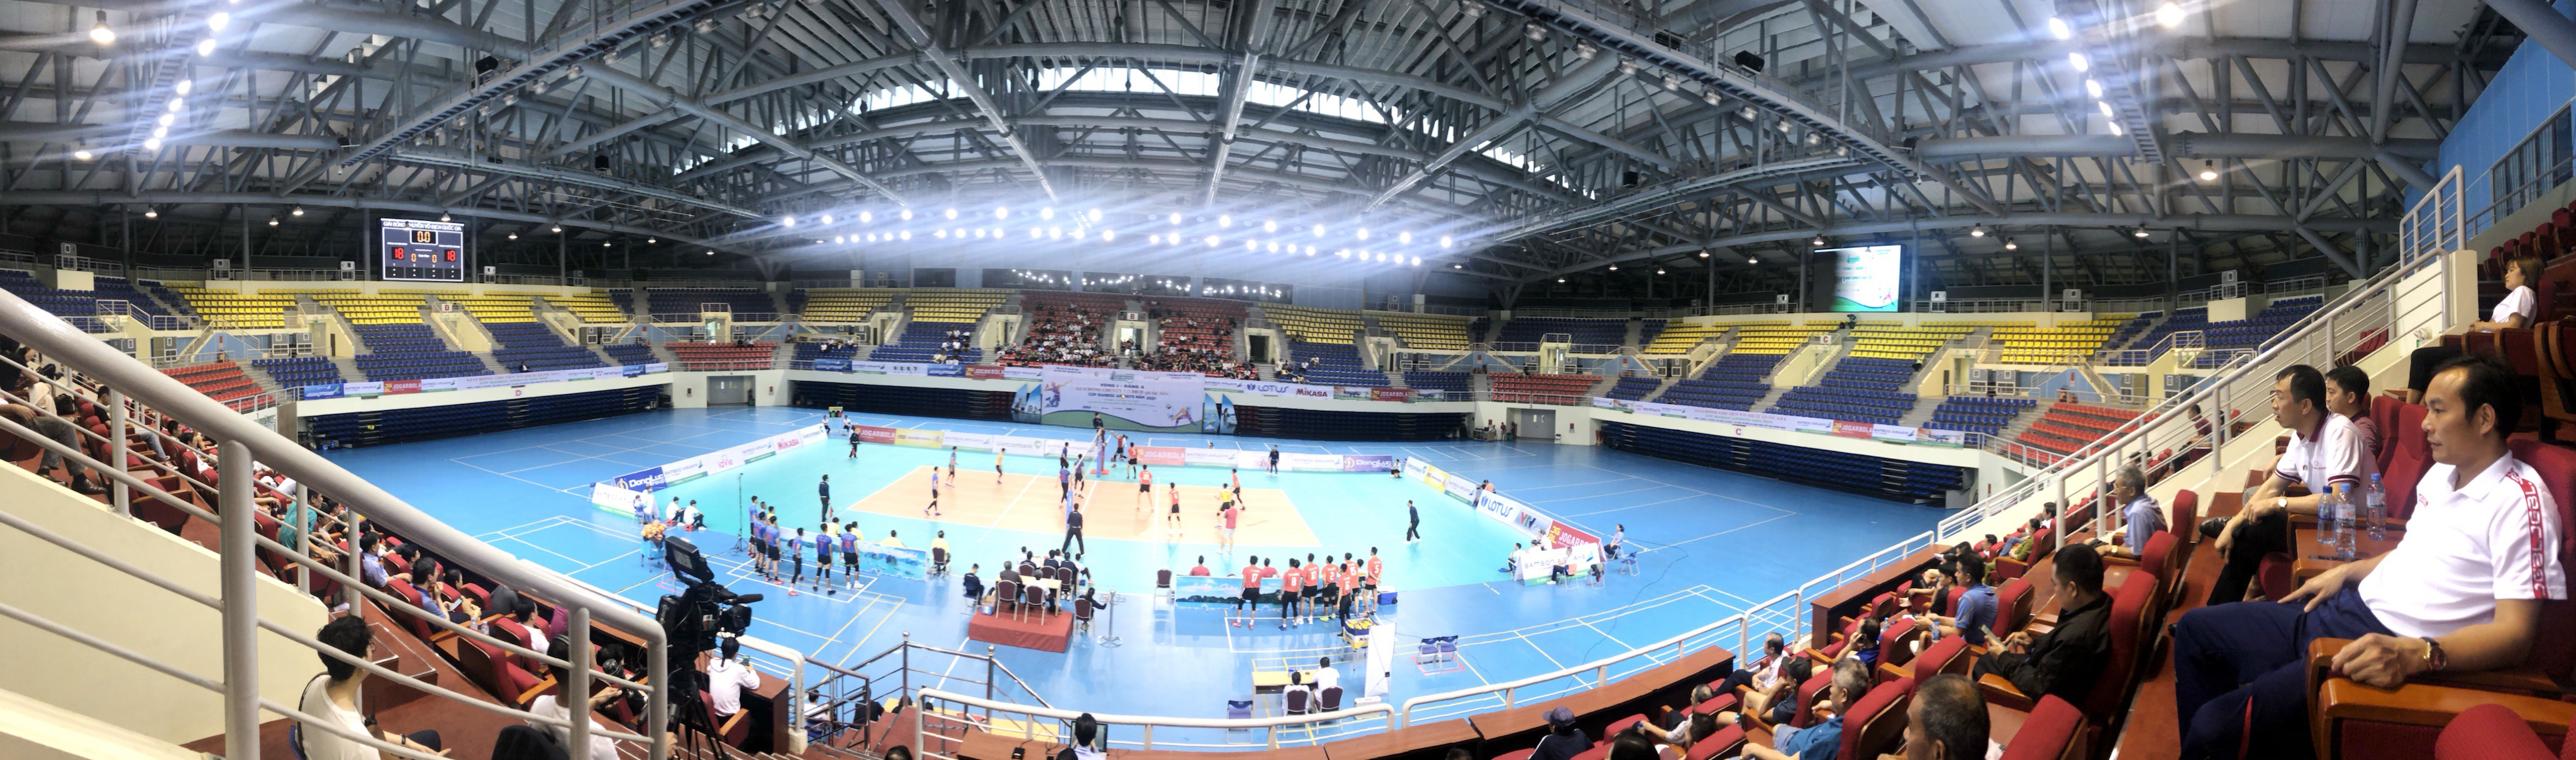 Nhà thi đấu nghìn tỷ và khát vọng của thể thao Quảng Ninh ảnh 4